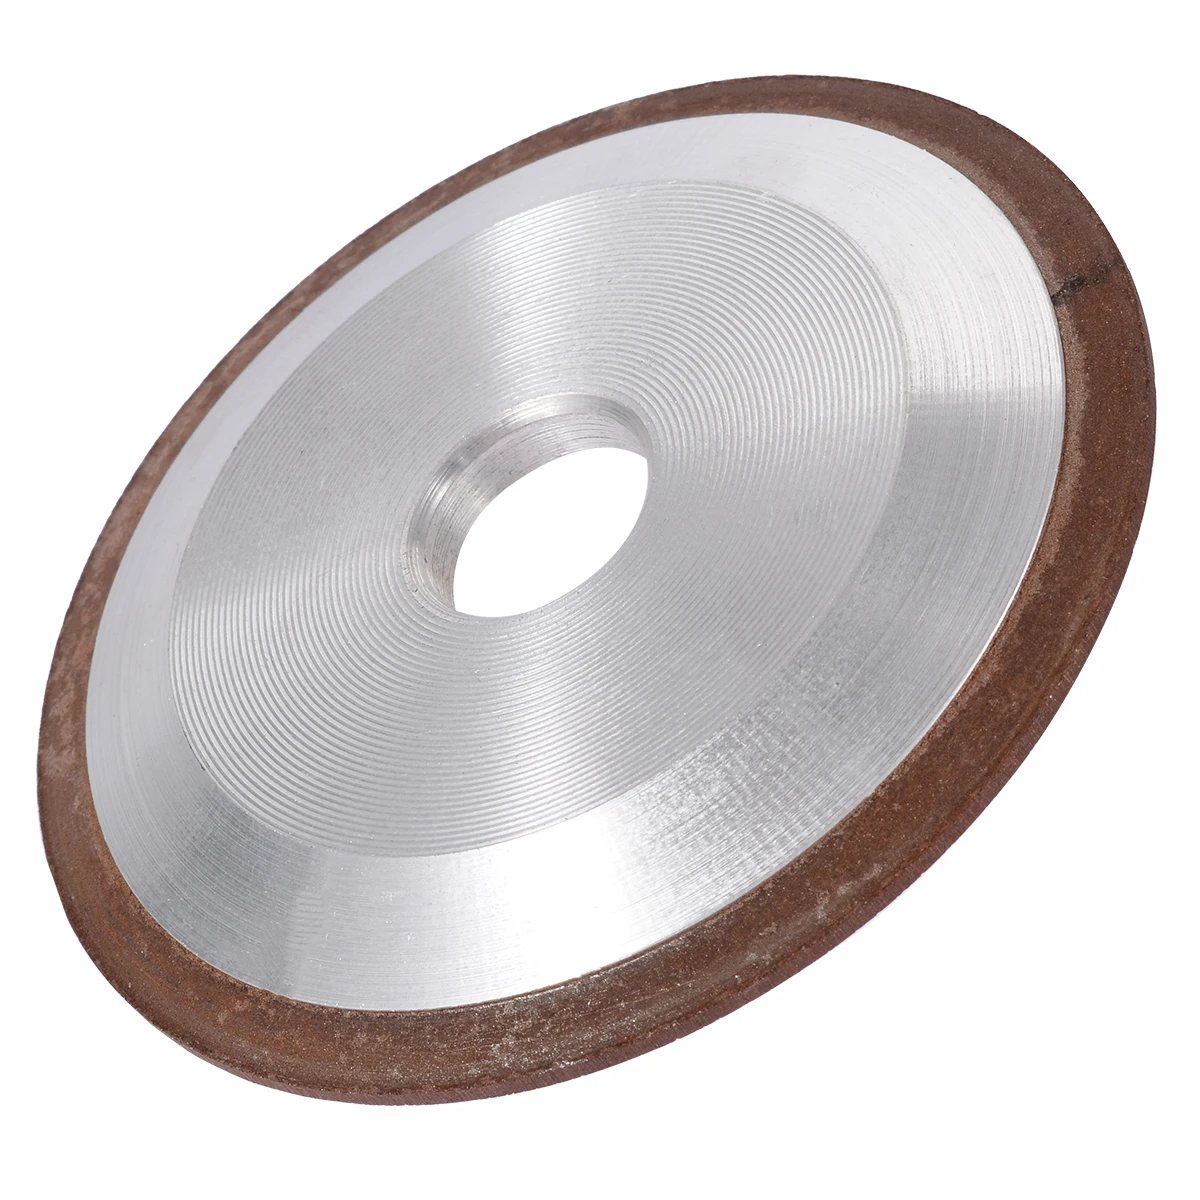 125 мм 150 зернистость односторонний конус простой смолы Алмазный шлифовальный круг диск наждачный электроинструмент аксессуары